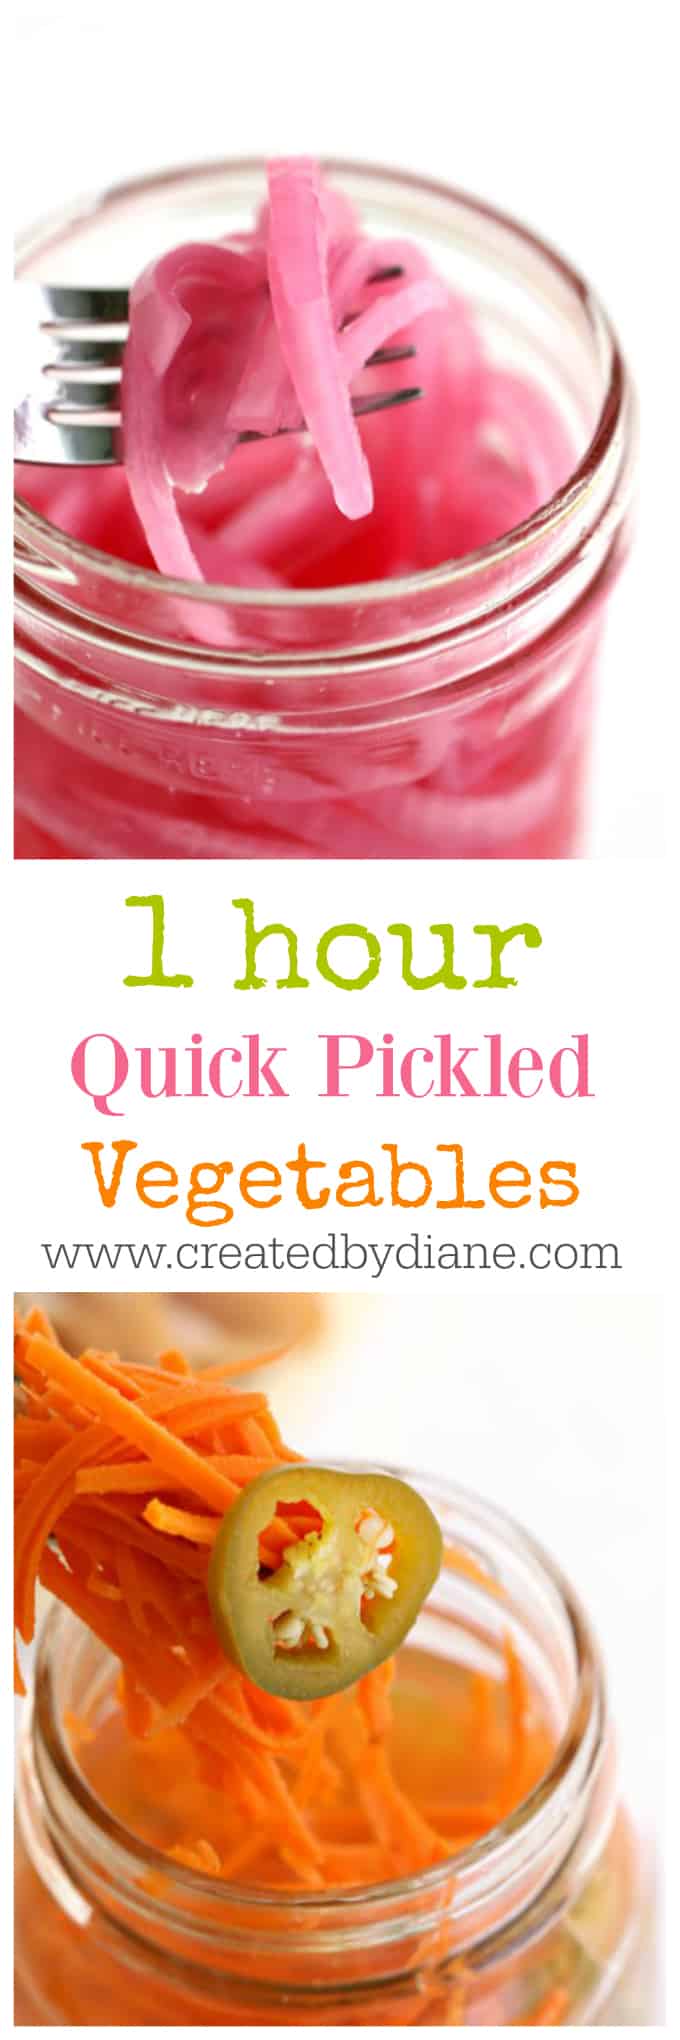 Quick Pickled Vegetables